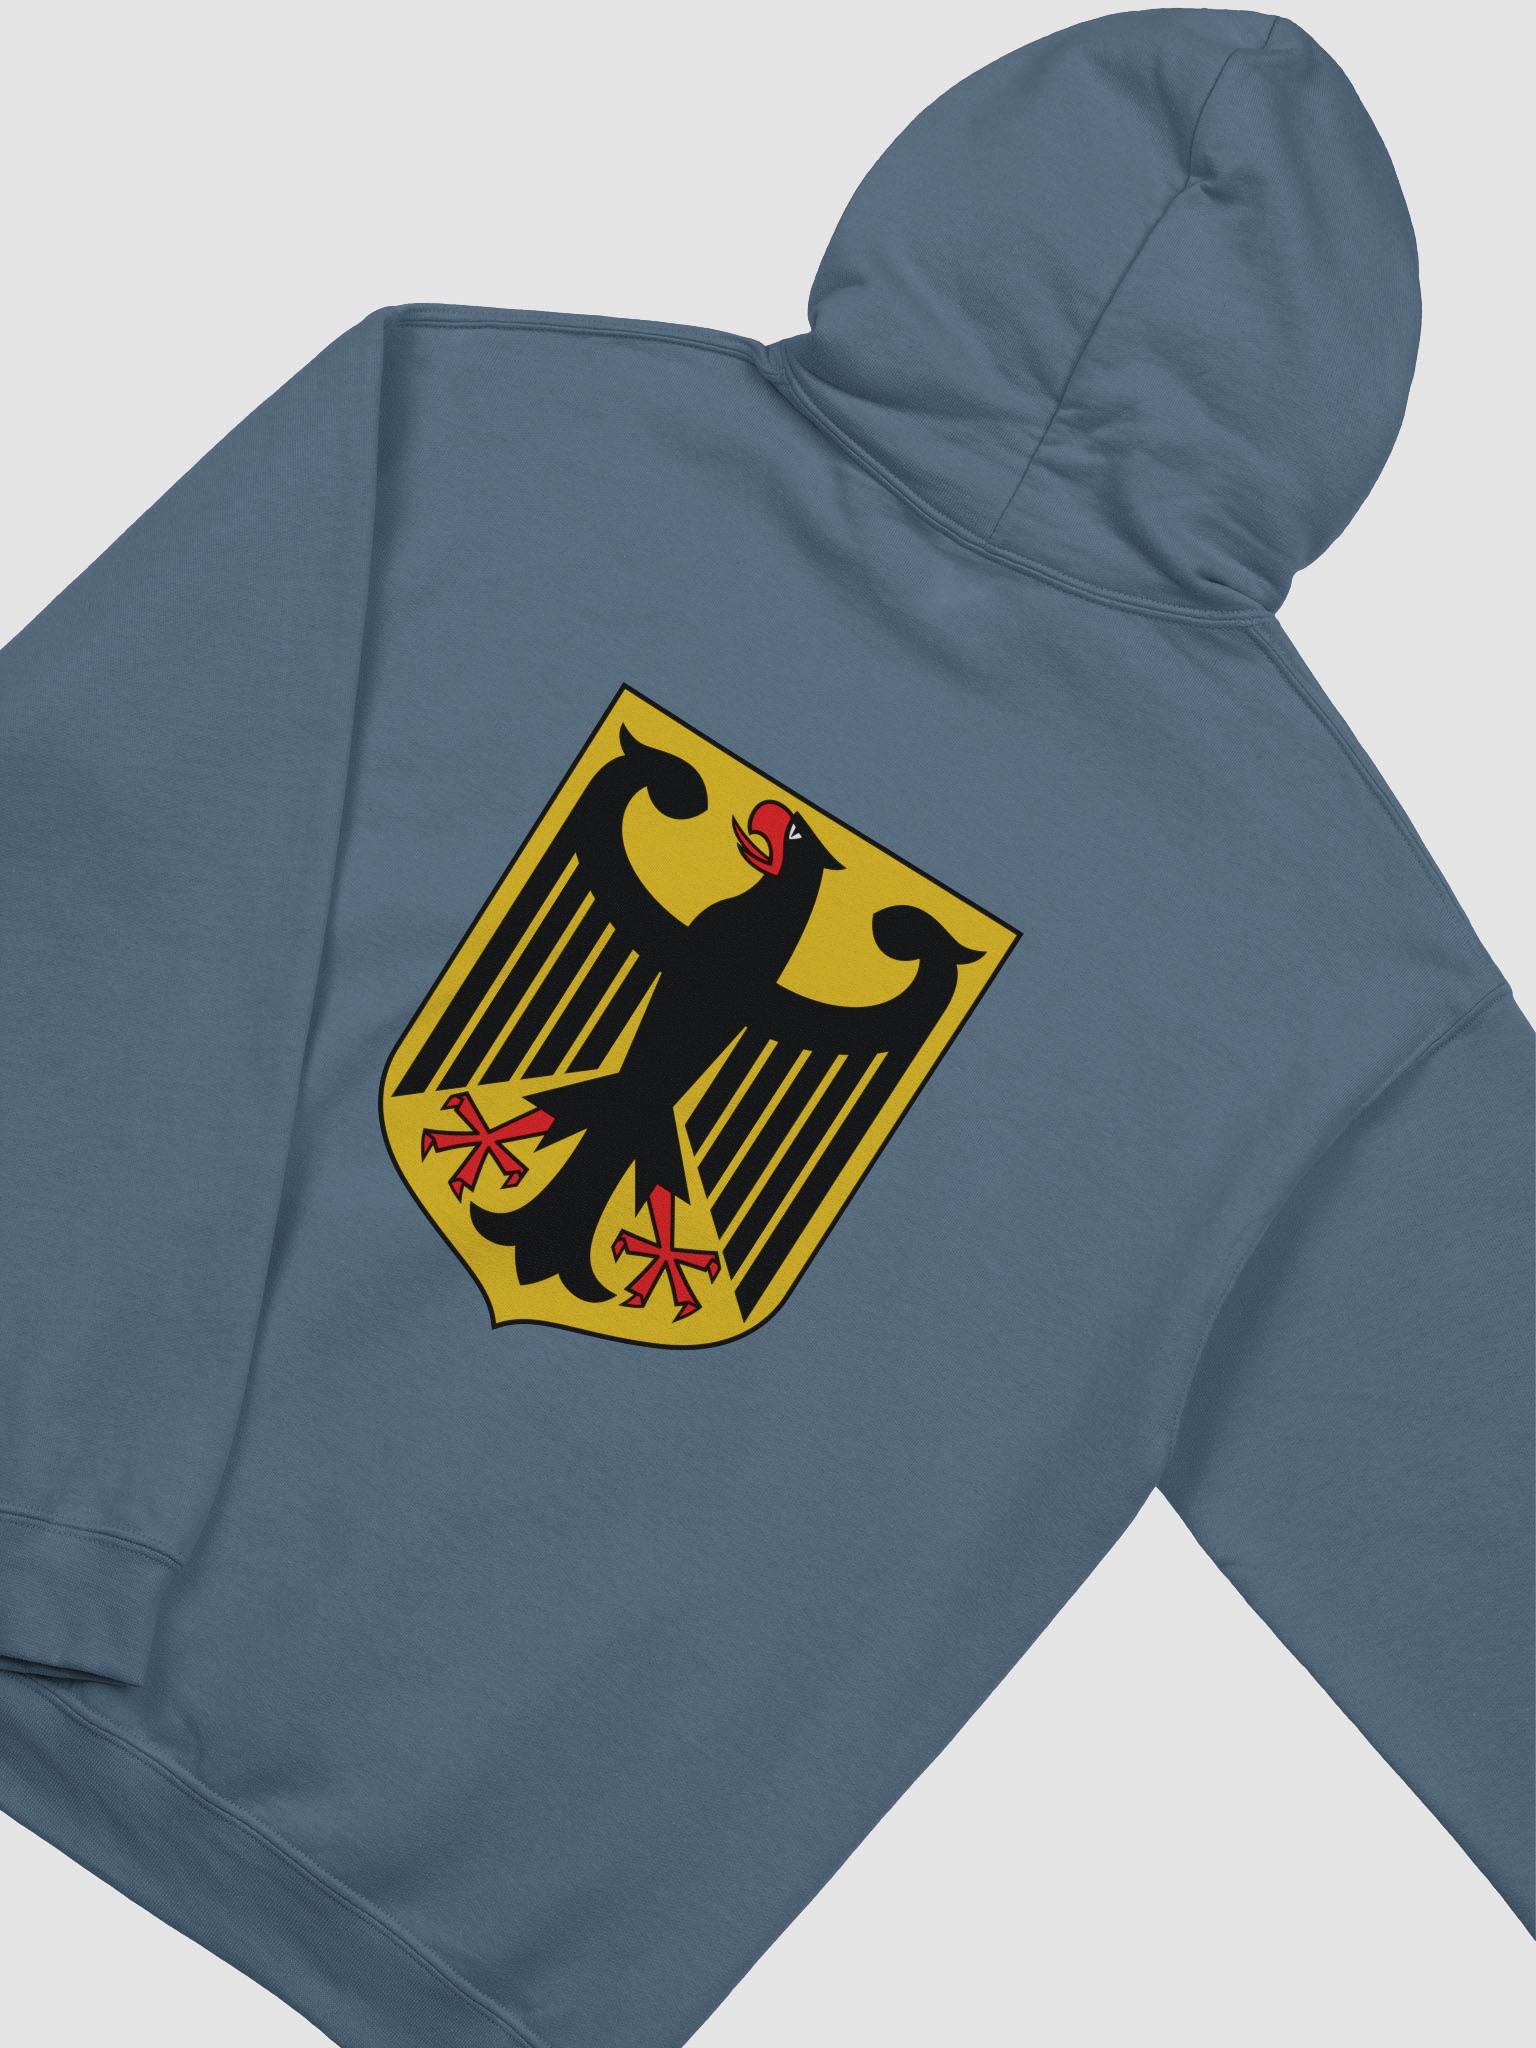 German Coat Of Arms Hoodie | People's Shop